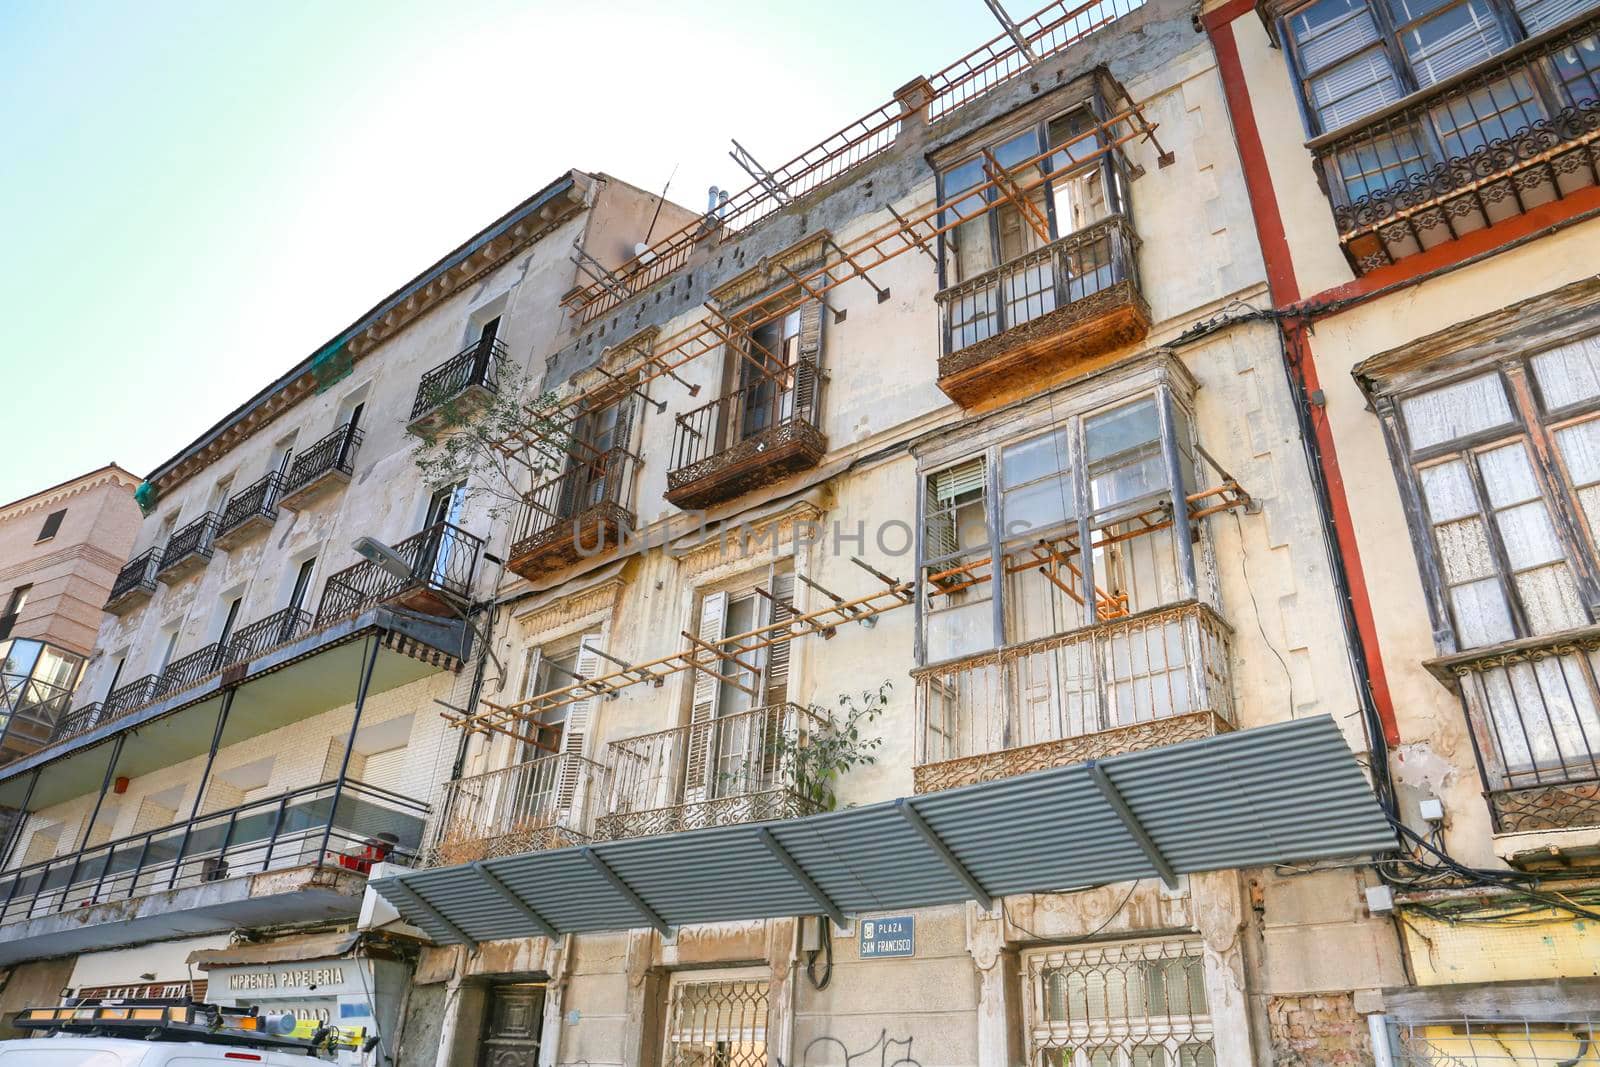 Modernist Style Houses under restoration in Cartagena by soniabonet